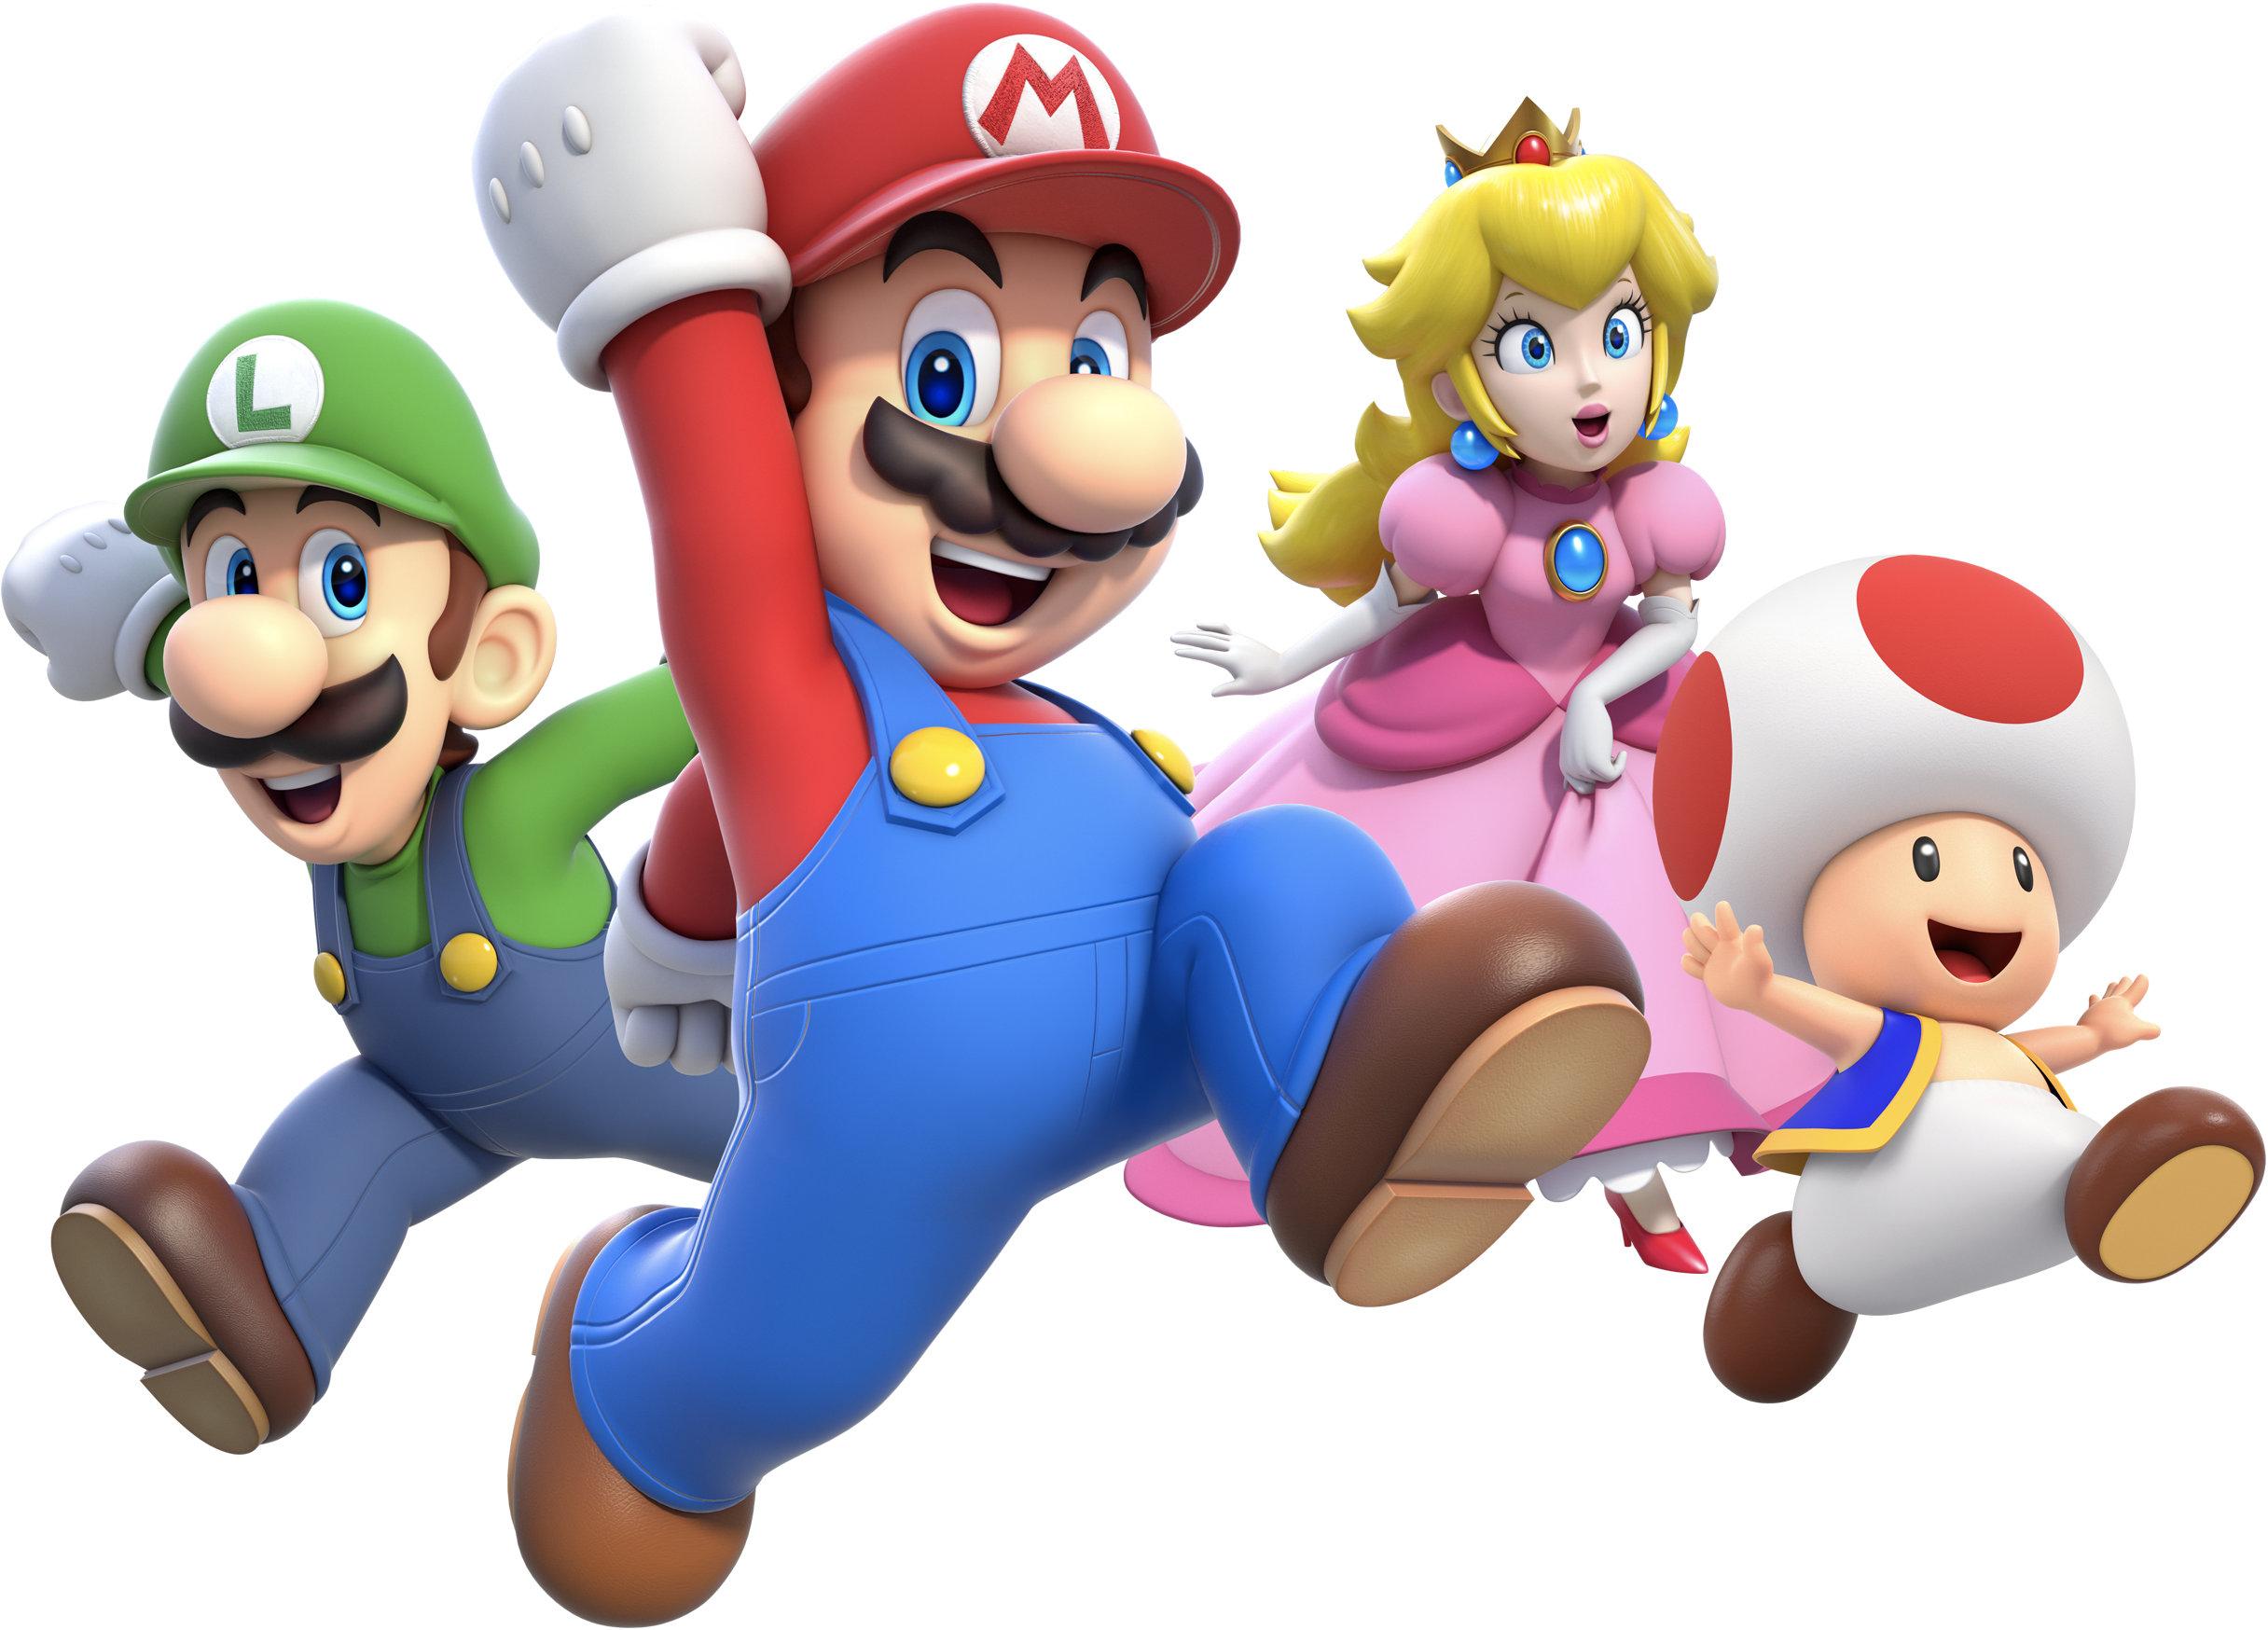 Mario, Luigi, Peach, and Toad